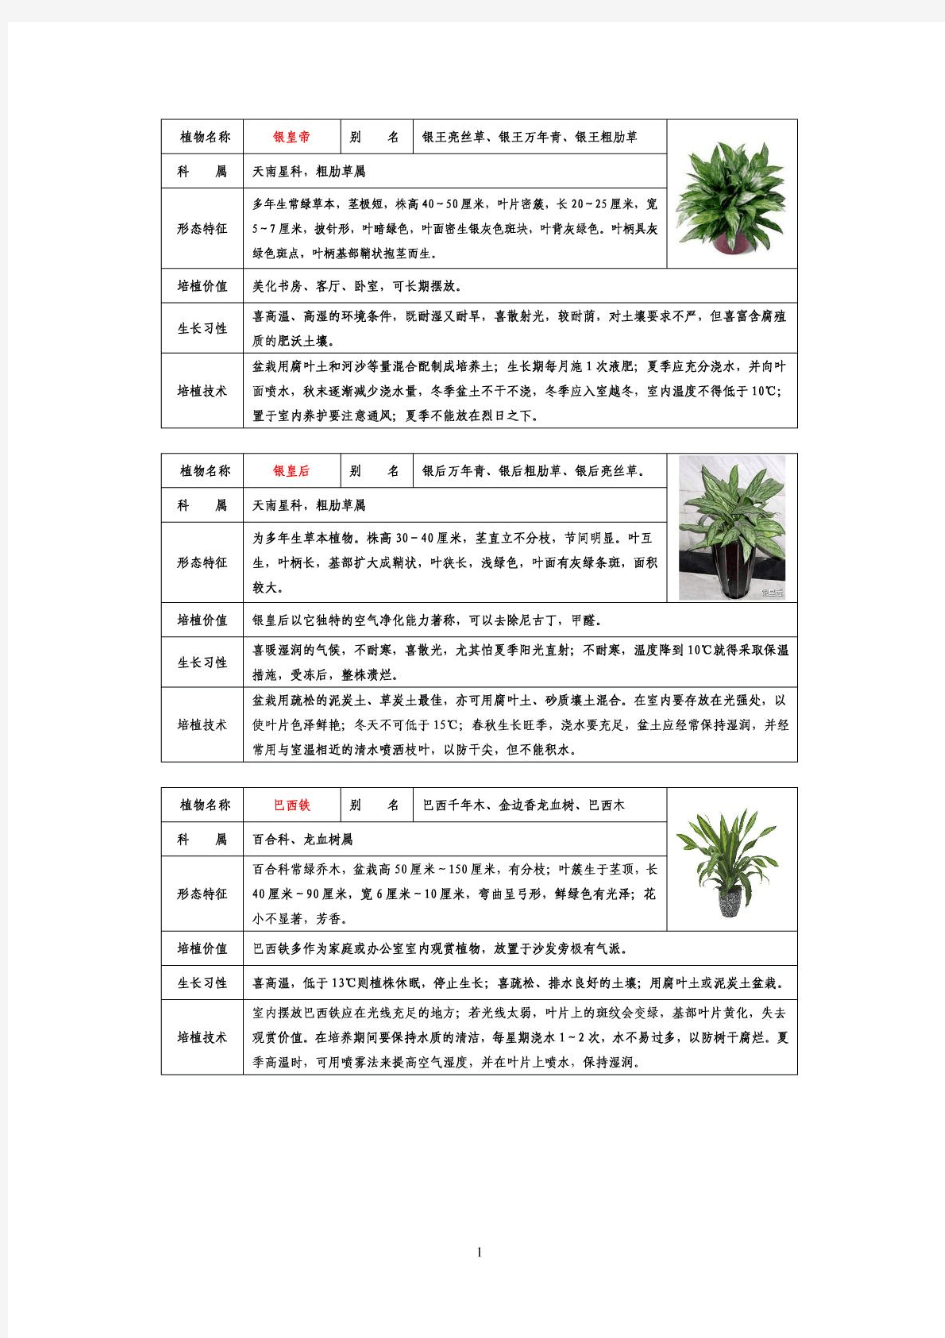 50种常见室内盆栽绿化植物介绍